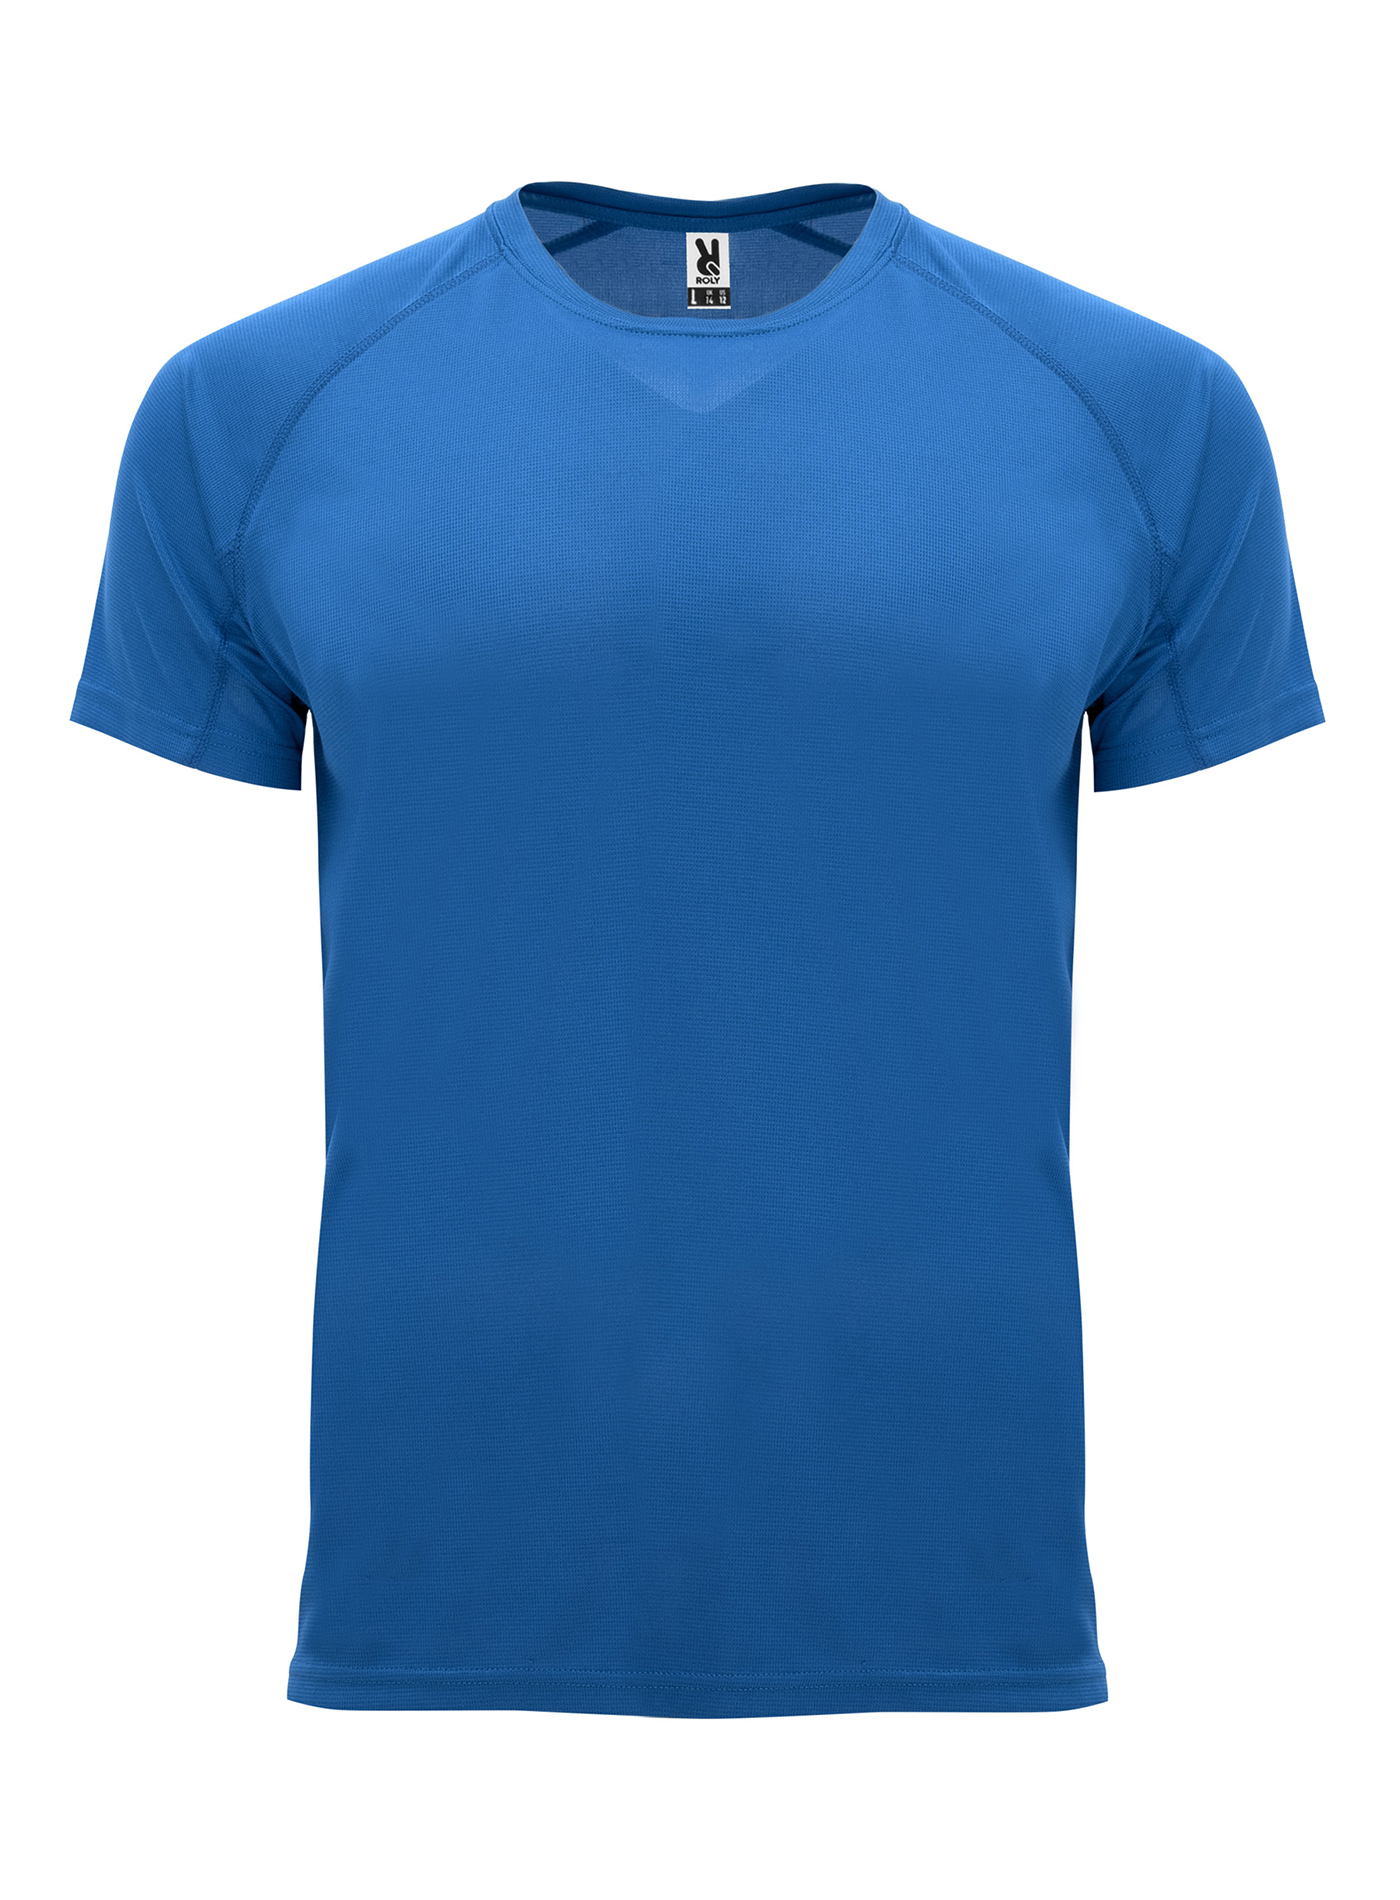 Pánské sportovní tričko Roly Bahrain - královská modrá S